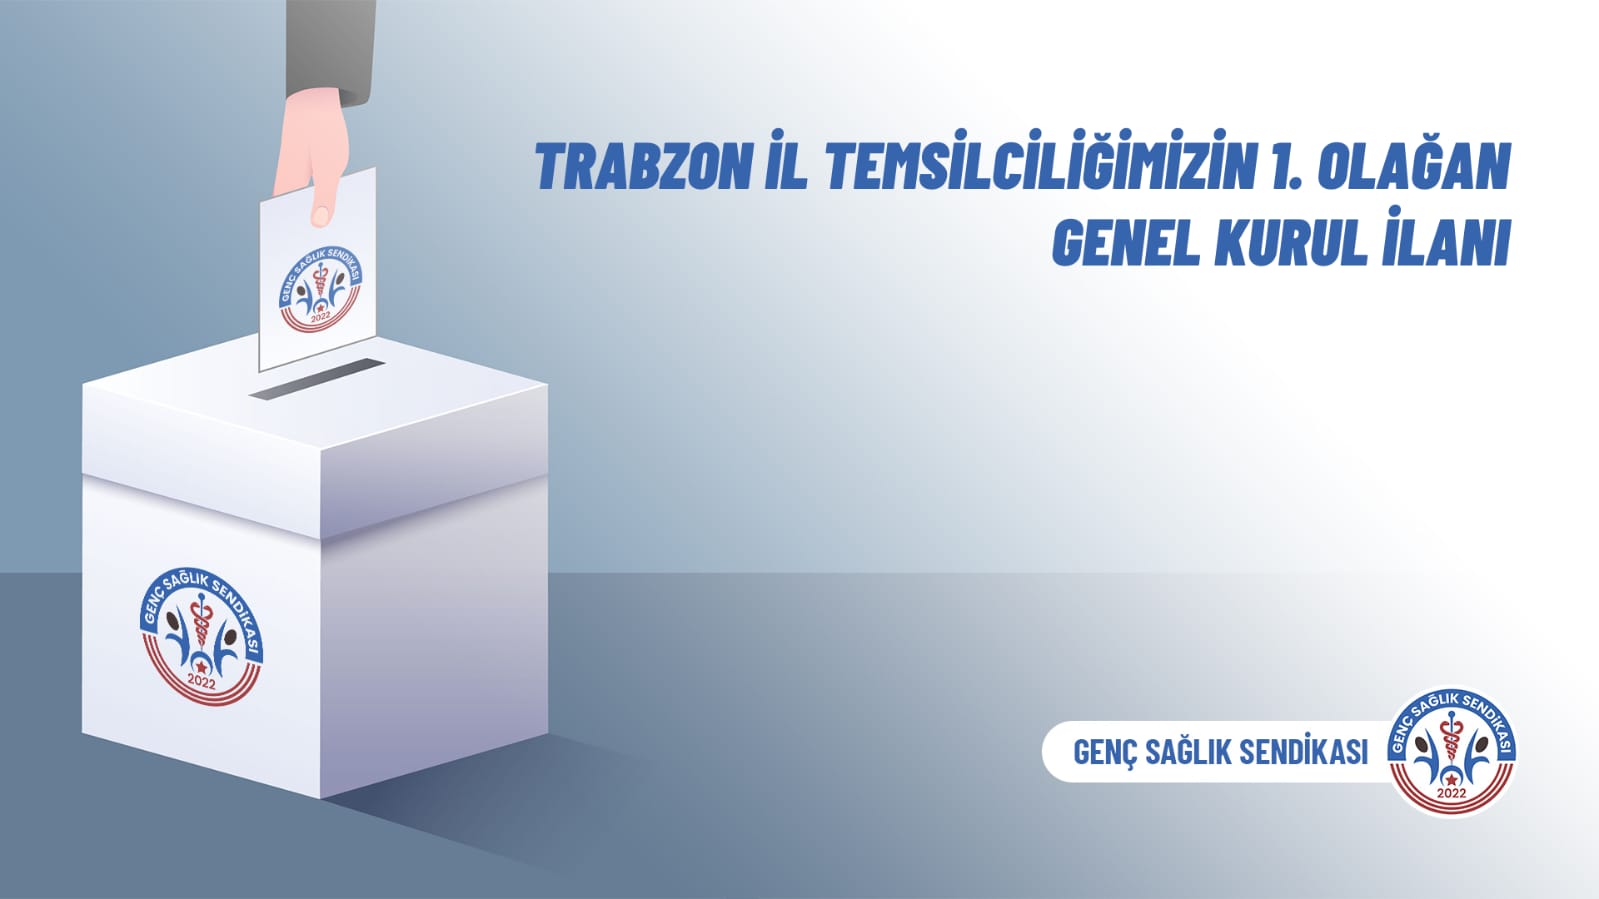 Trabzon il Temsilciliğimizin 1. Olağan Genel Kurul İlanı